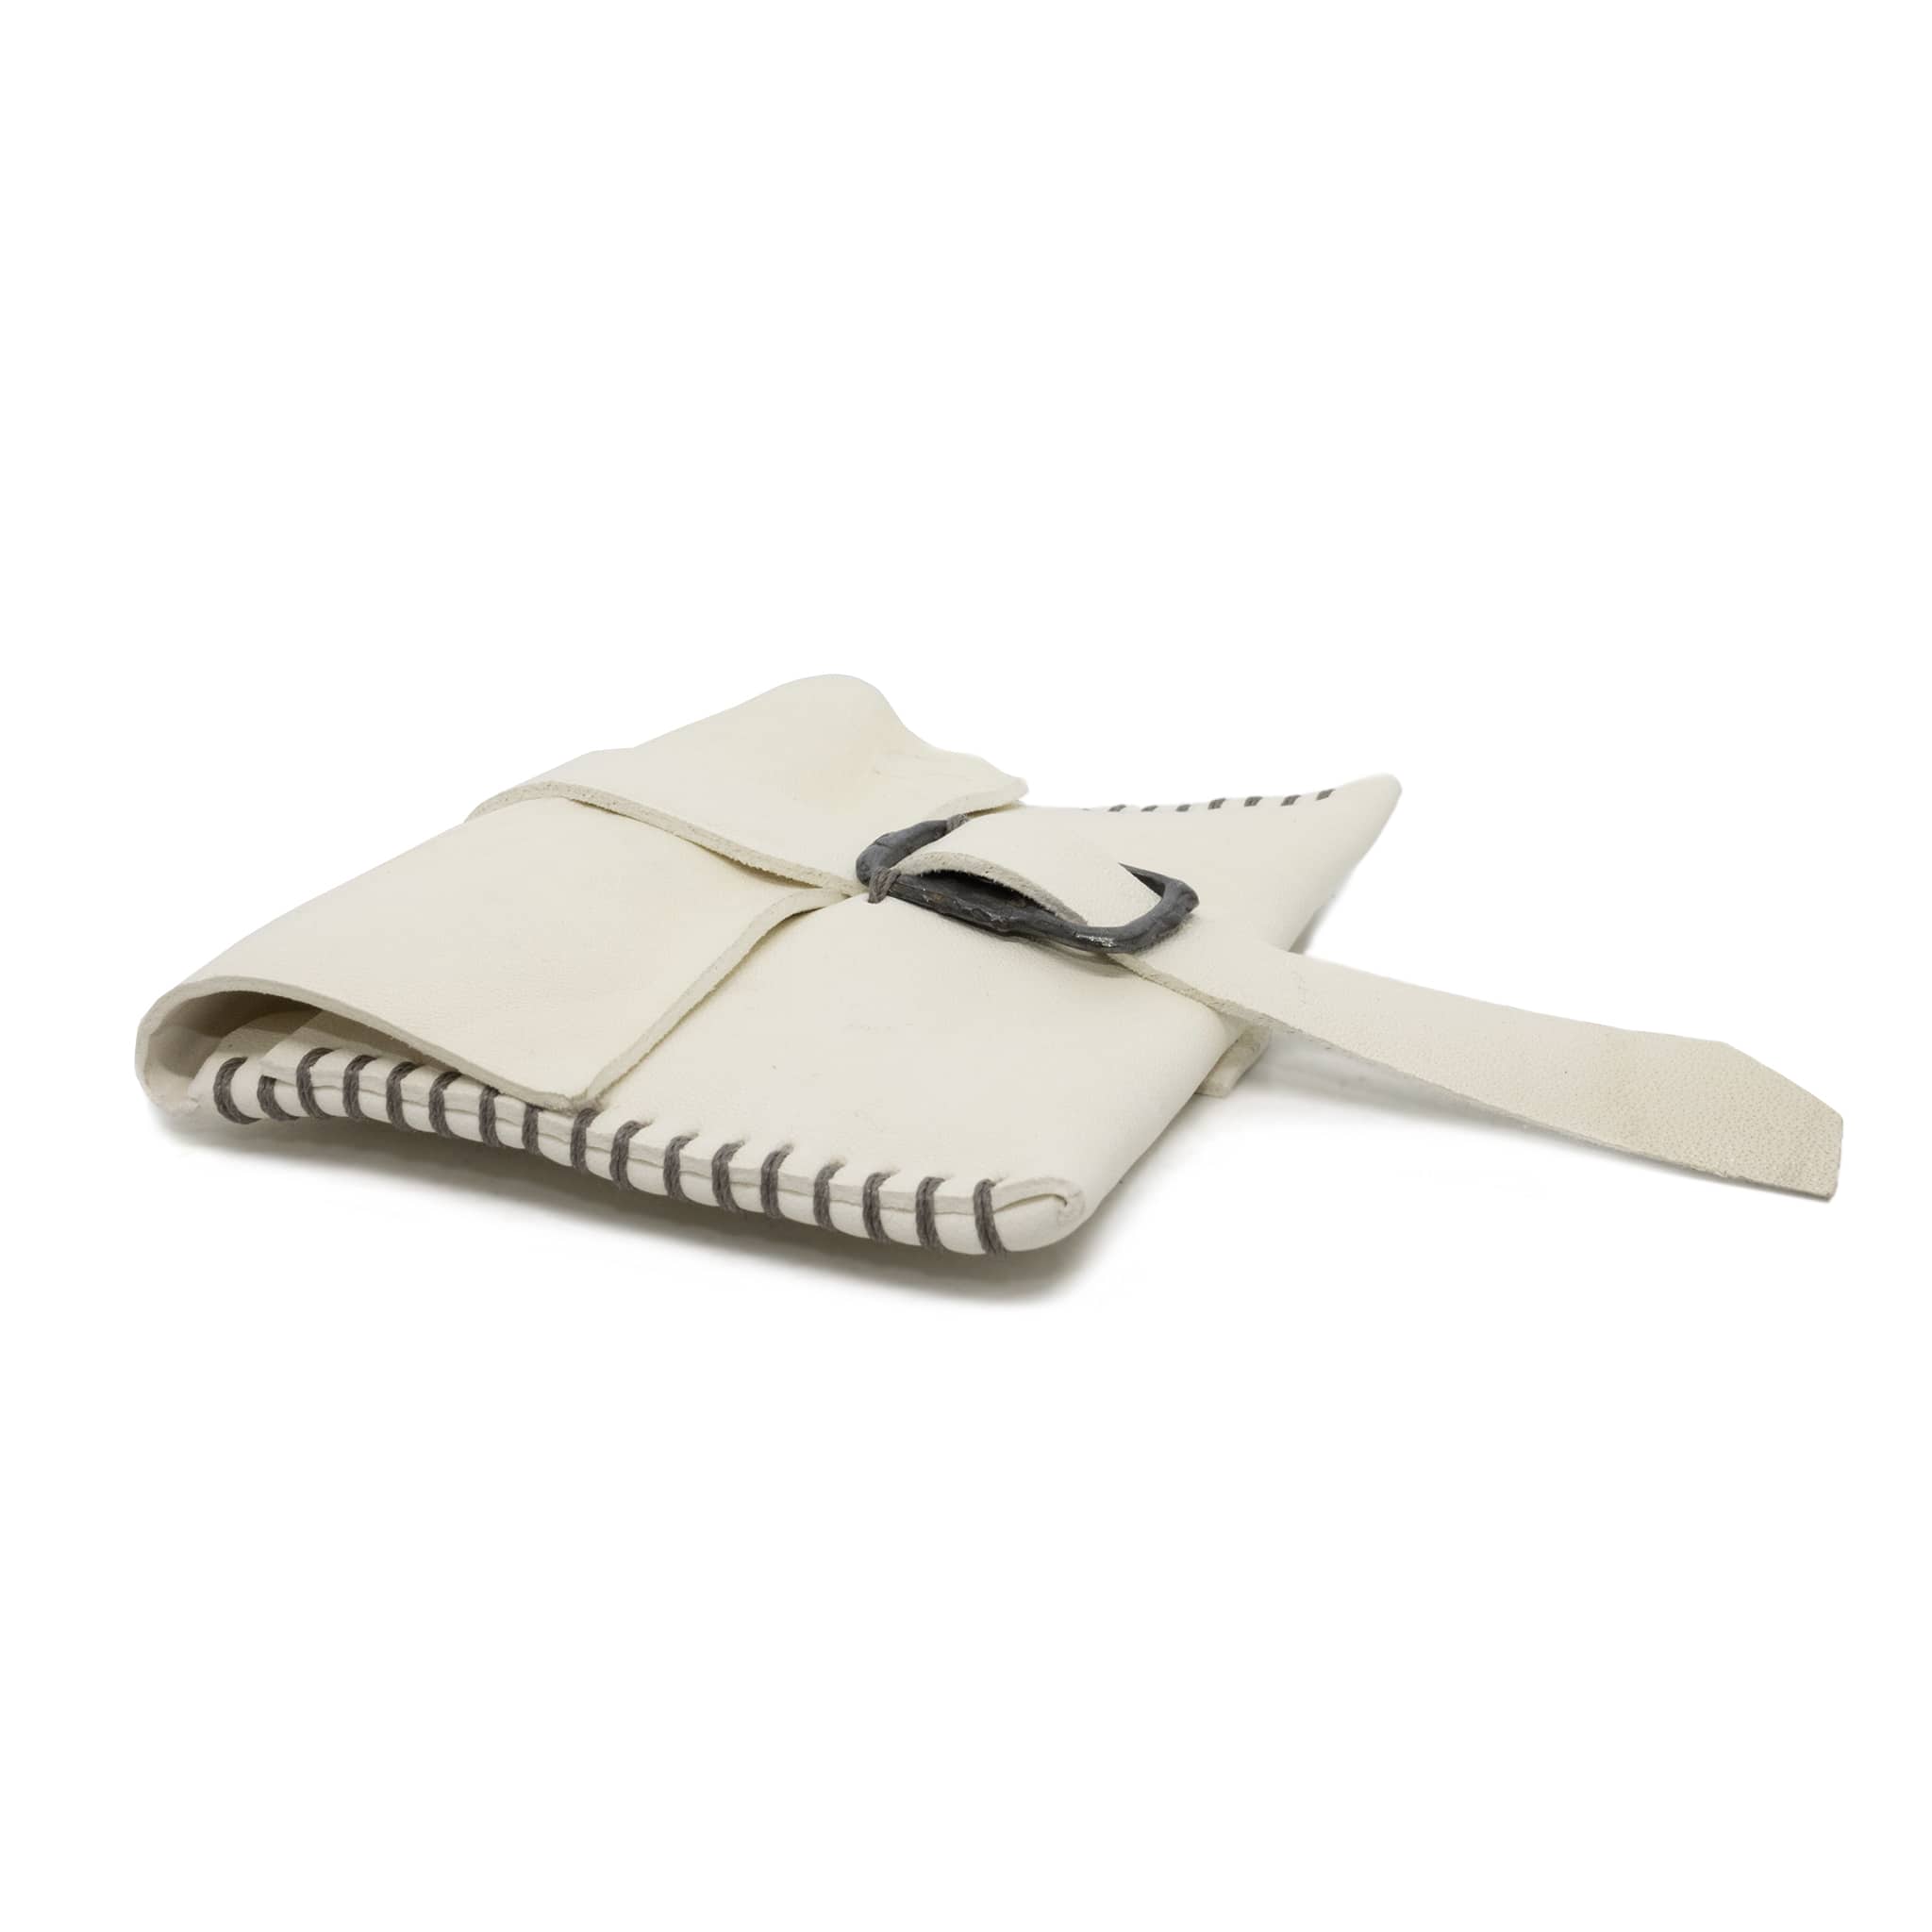 albino culatta one piece leather card case | atelier skn